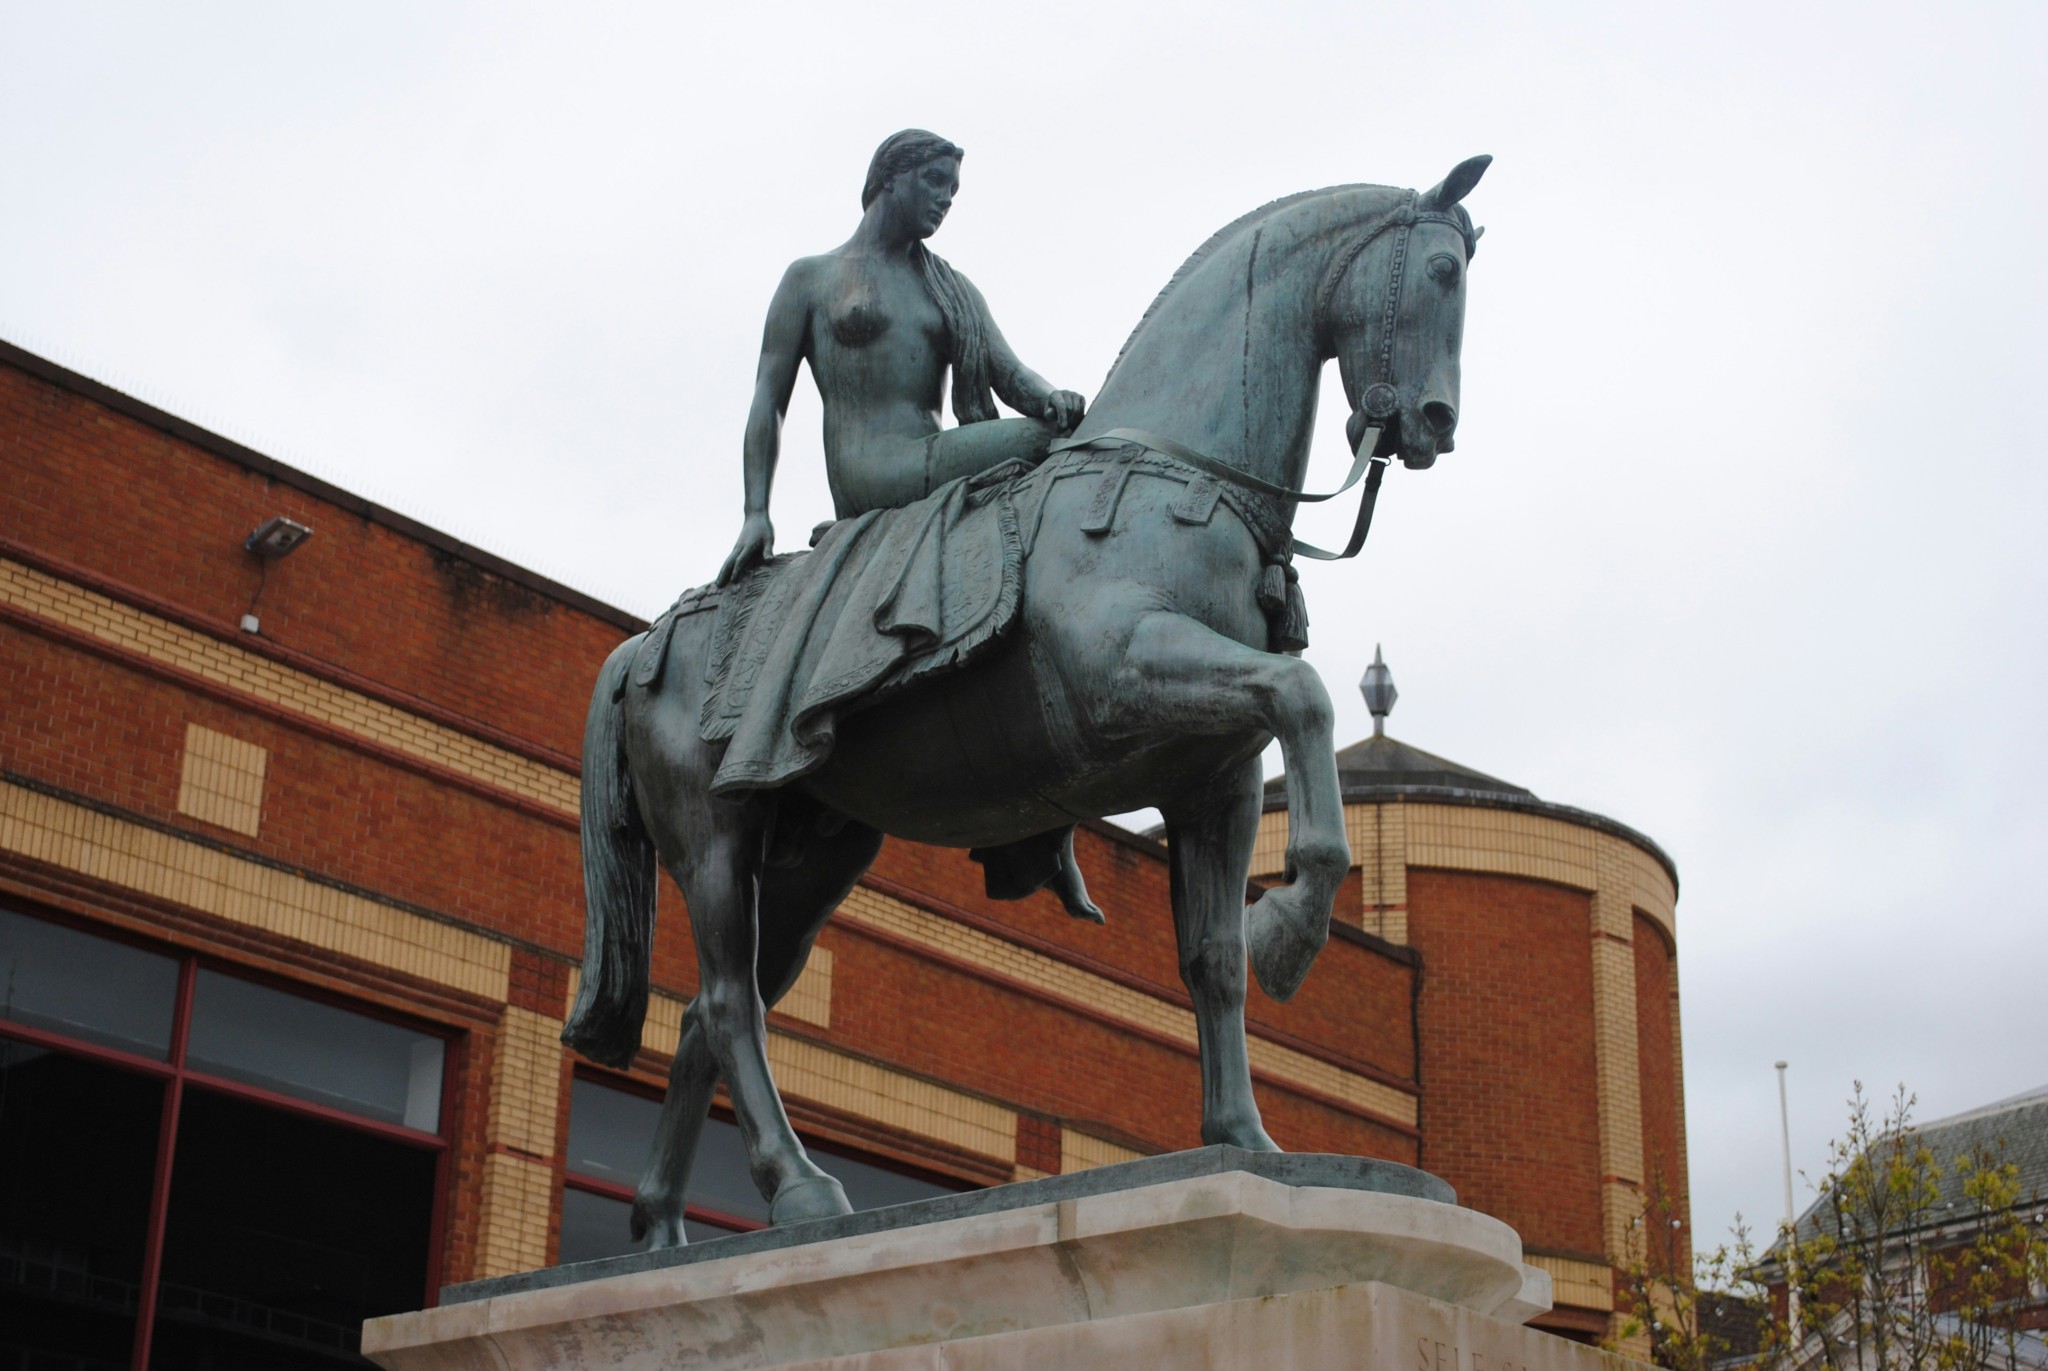 St Godiva Statue, Coventry, UK